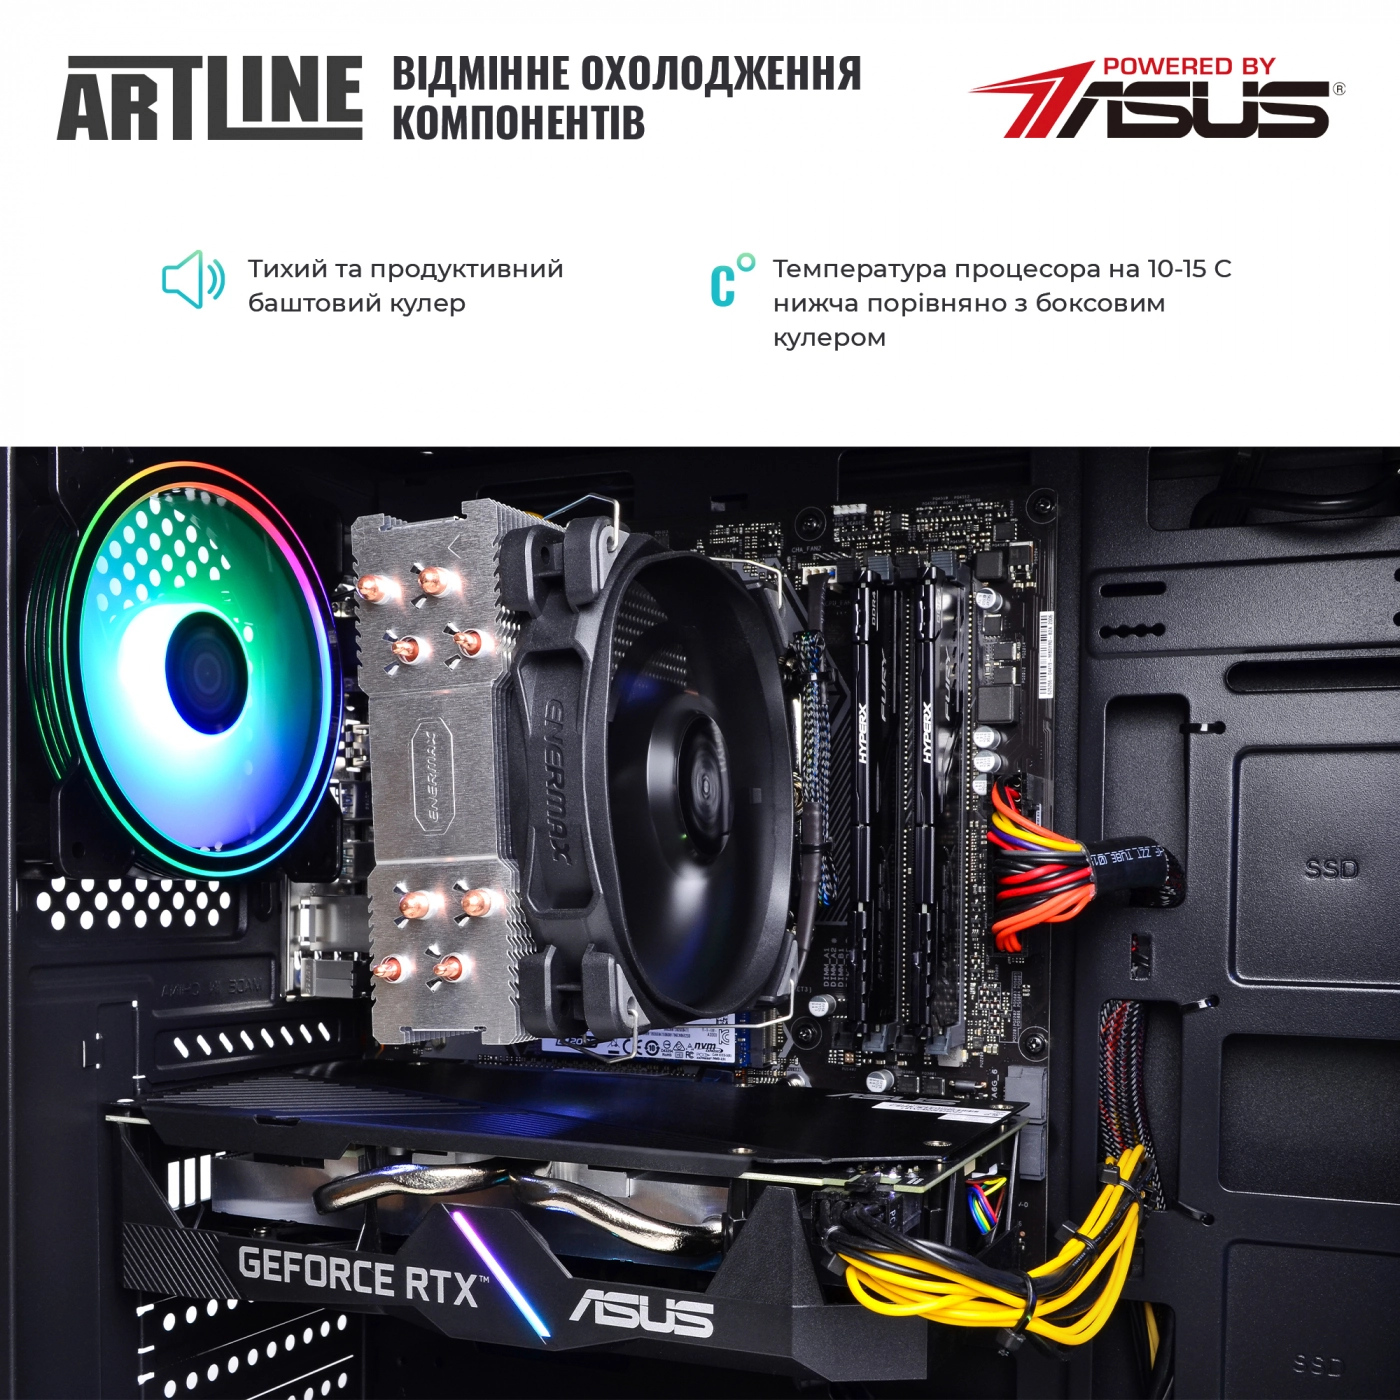 Купить Компьютер ARTLINE Gaming X53v34 - фото 7